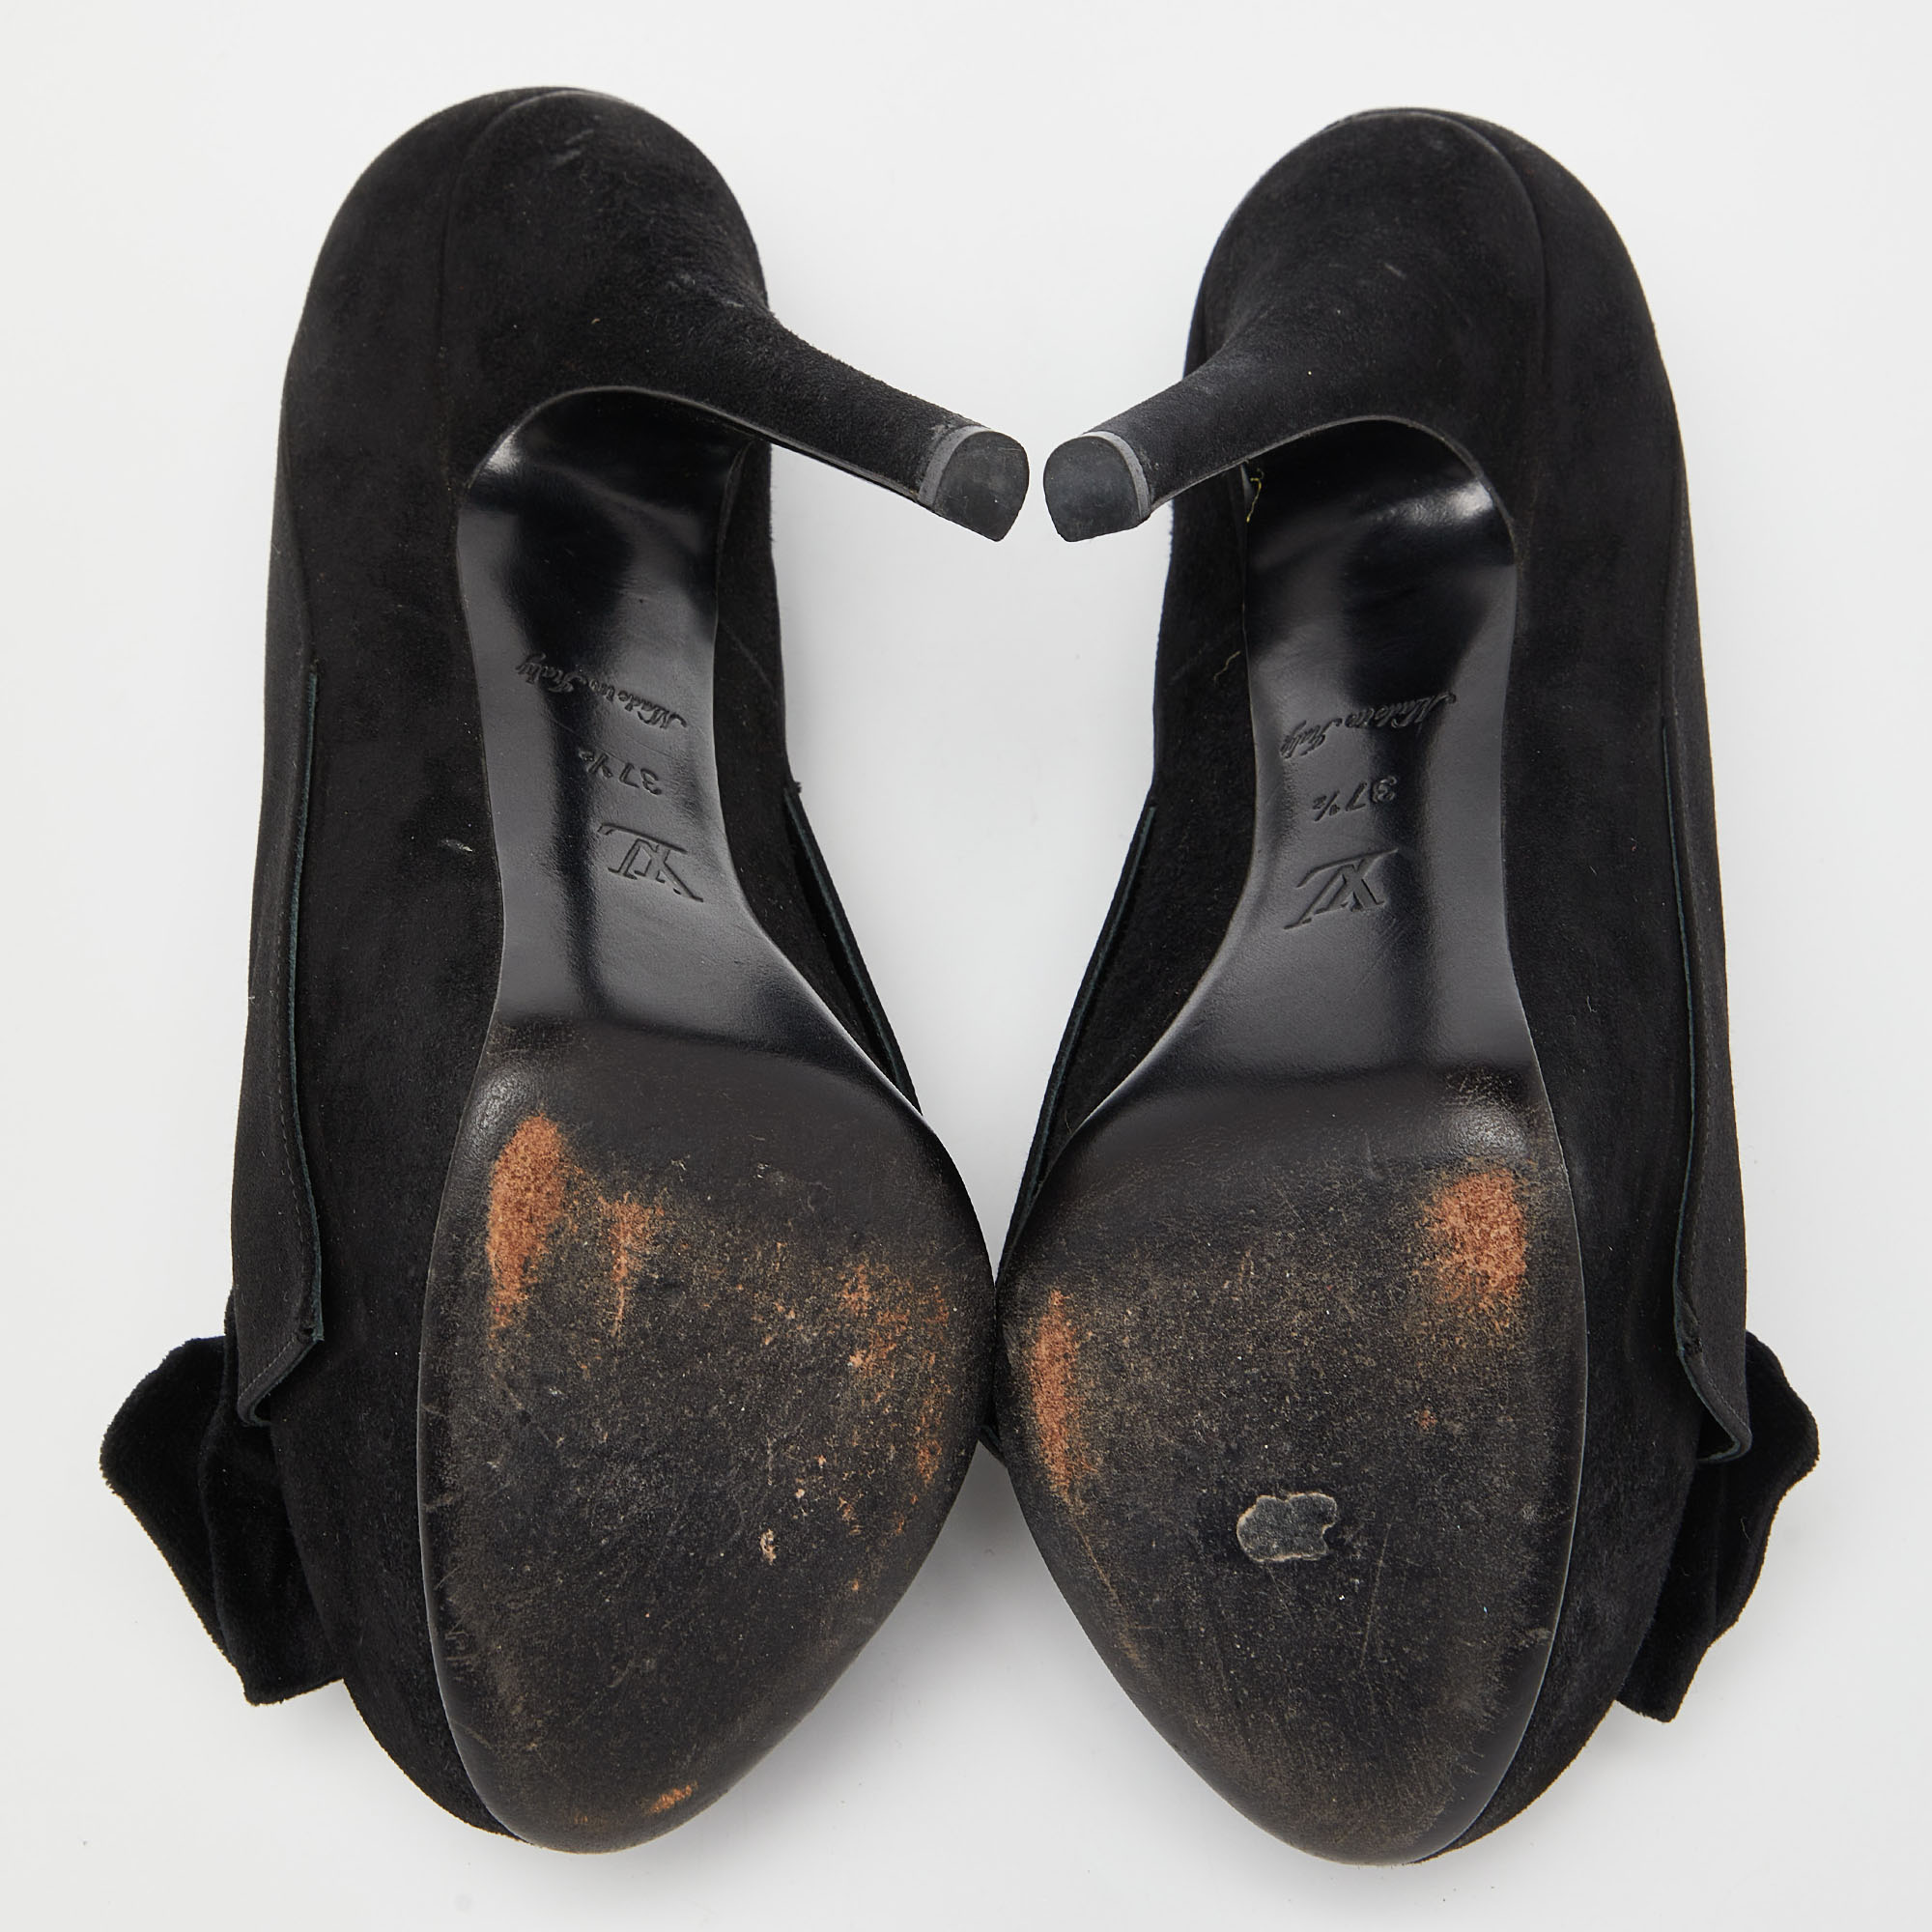 Louis Vuitton Black Suede Peep Toe Pumps Size 37.5